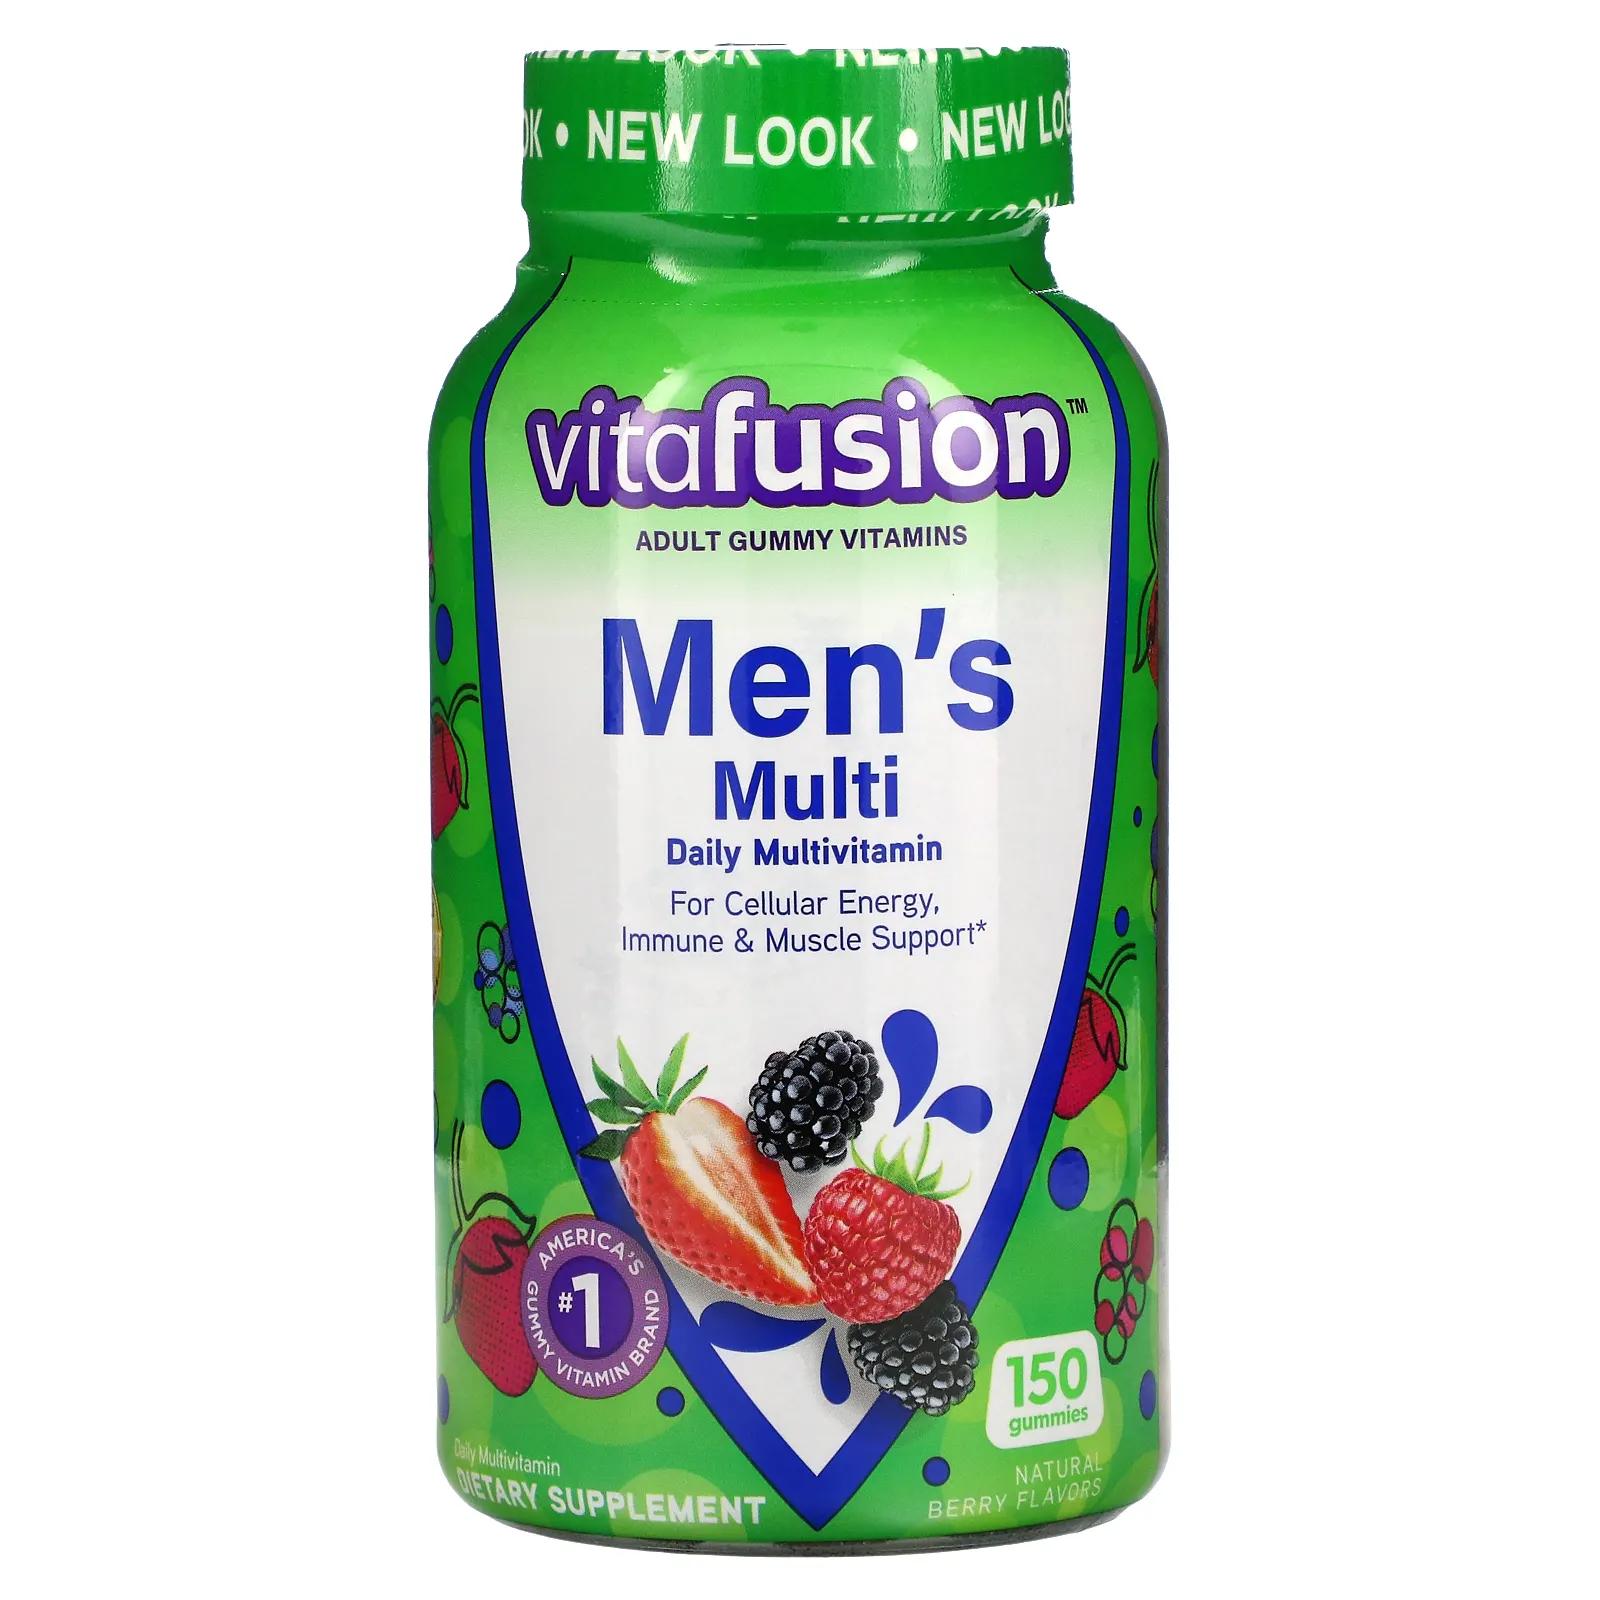 VitaFusion Комплексные мультивитамины для мужчин натуральные ягодные вкусы 150 жевательных таблеток vitafusion multivites незаменимые мультивитамины натуральный ягодный персиковый и апельсиновый вкусы 150 жевательных таблеток